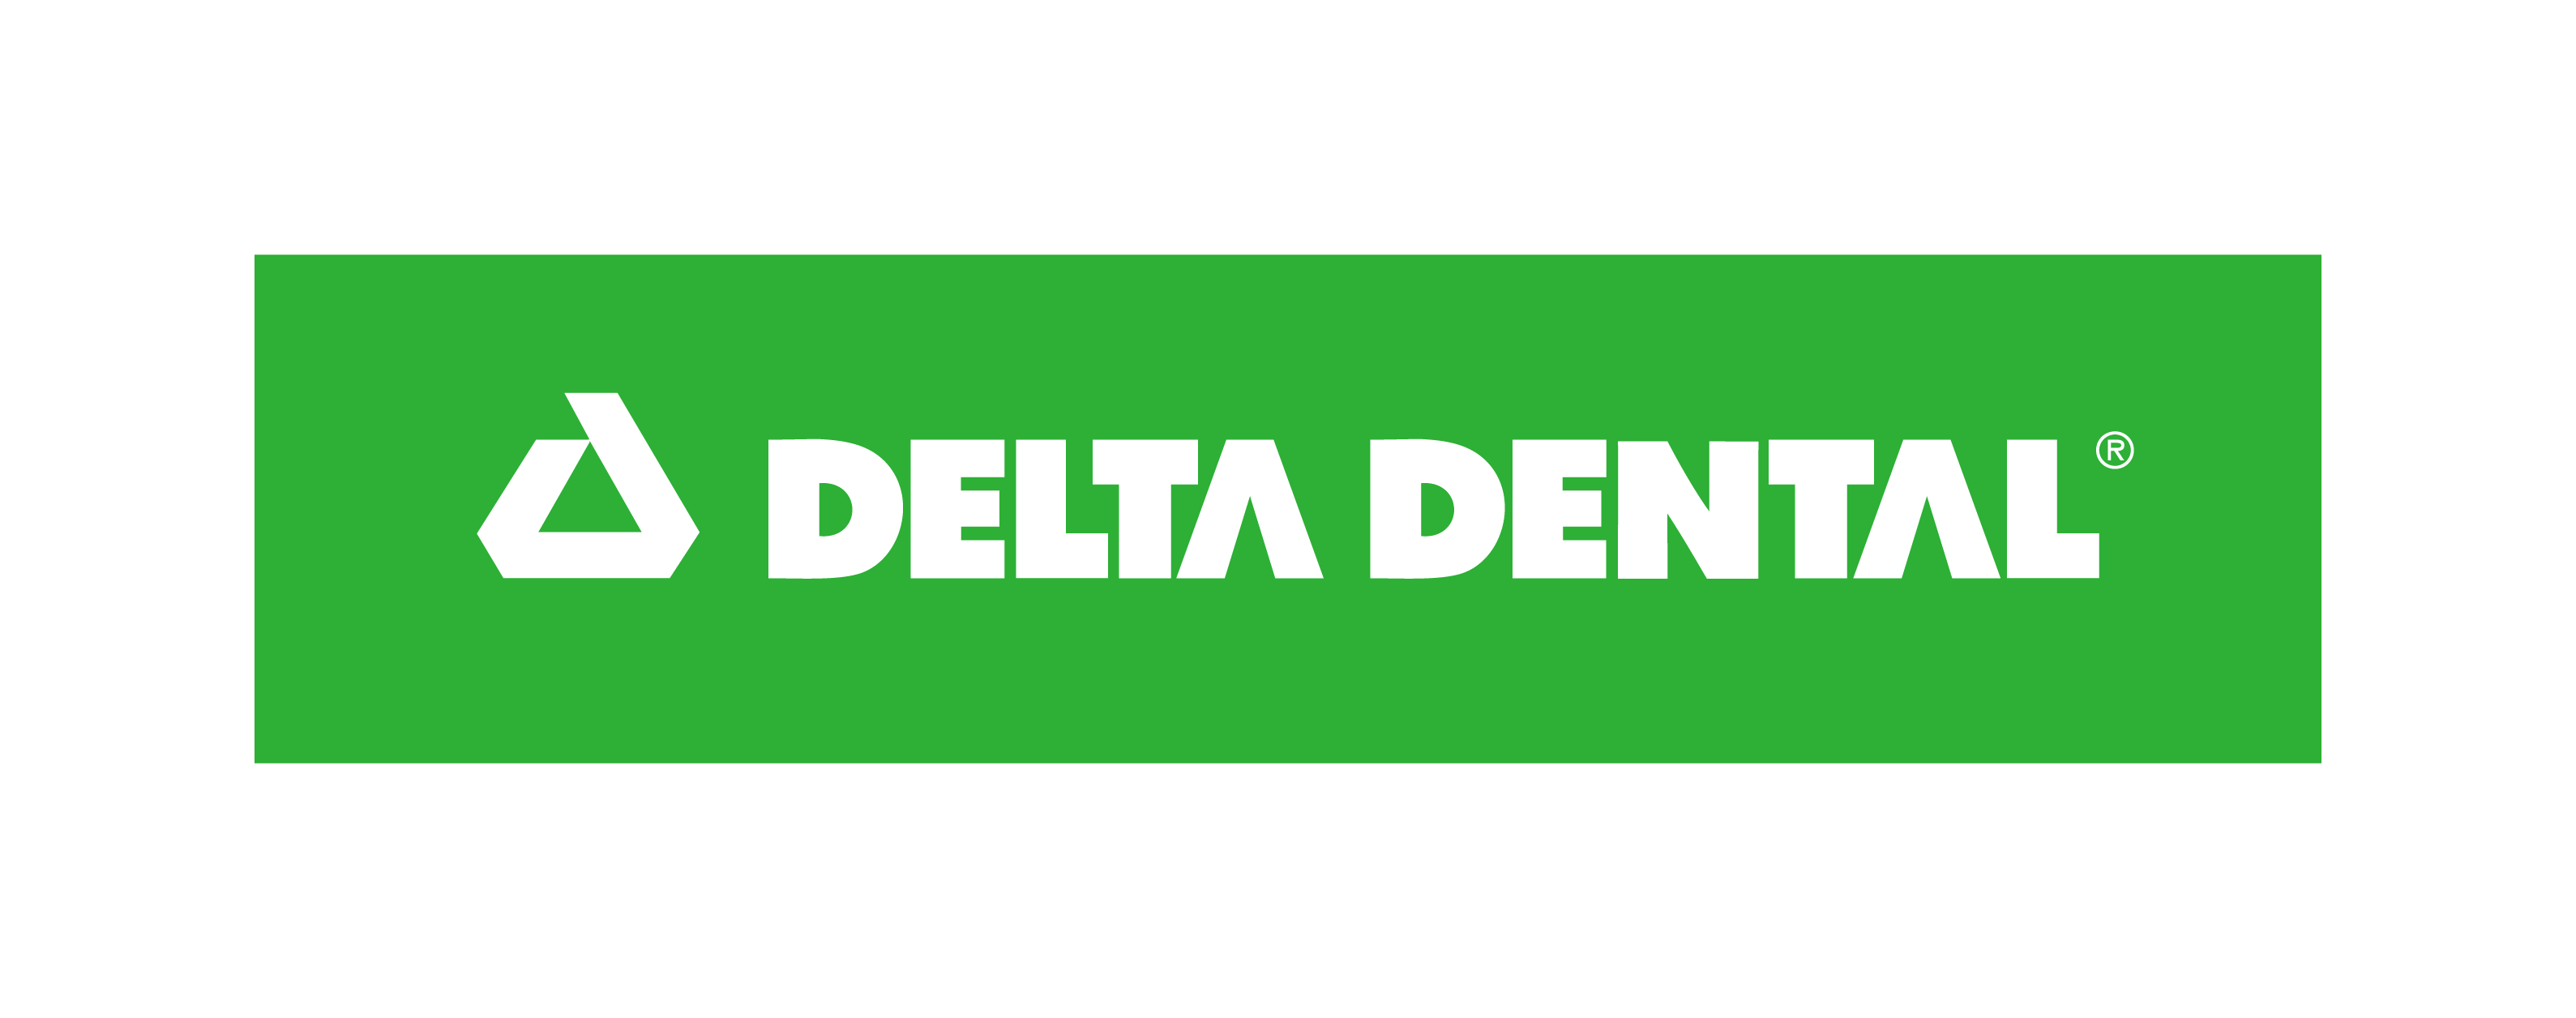 The green logo of Delta Dental.